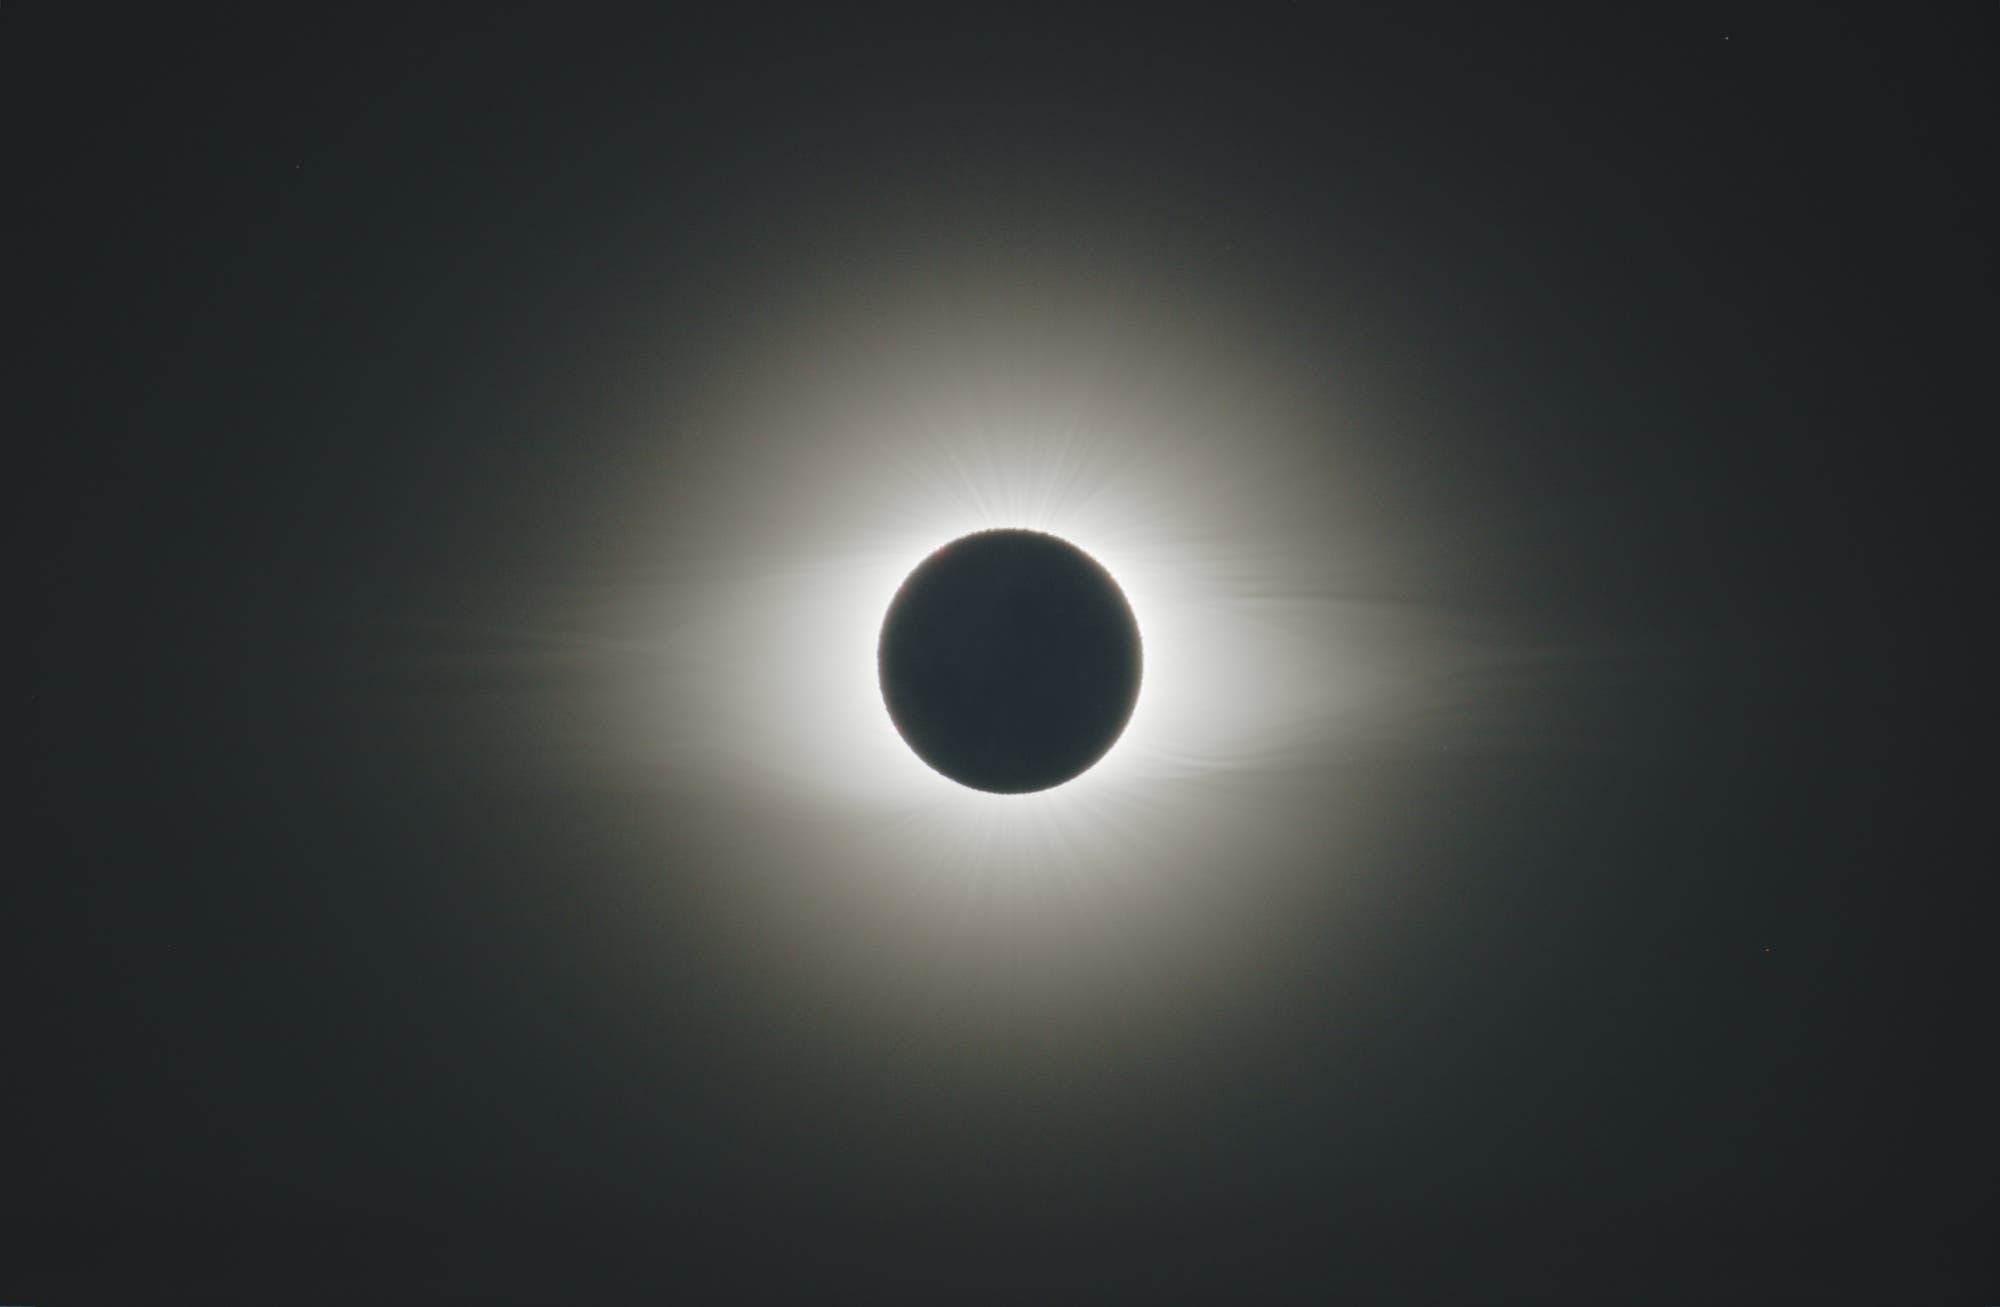 Sonnenfinsternis am 2. Juli 2019 in Chile